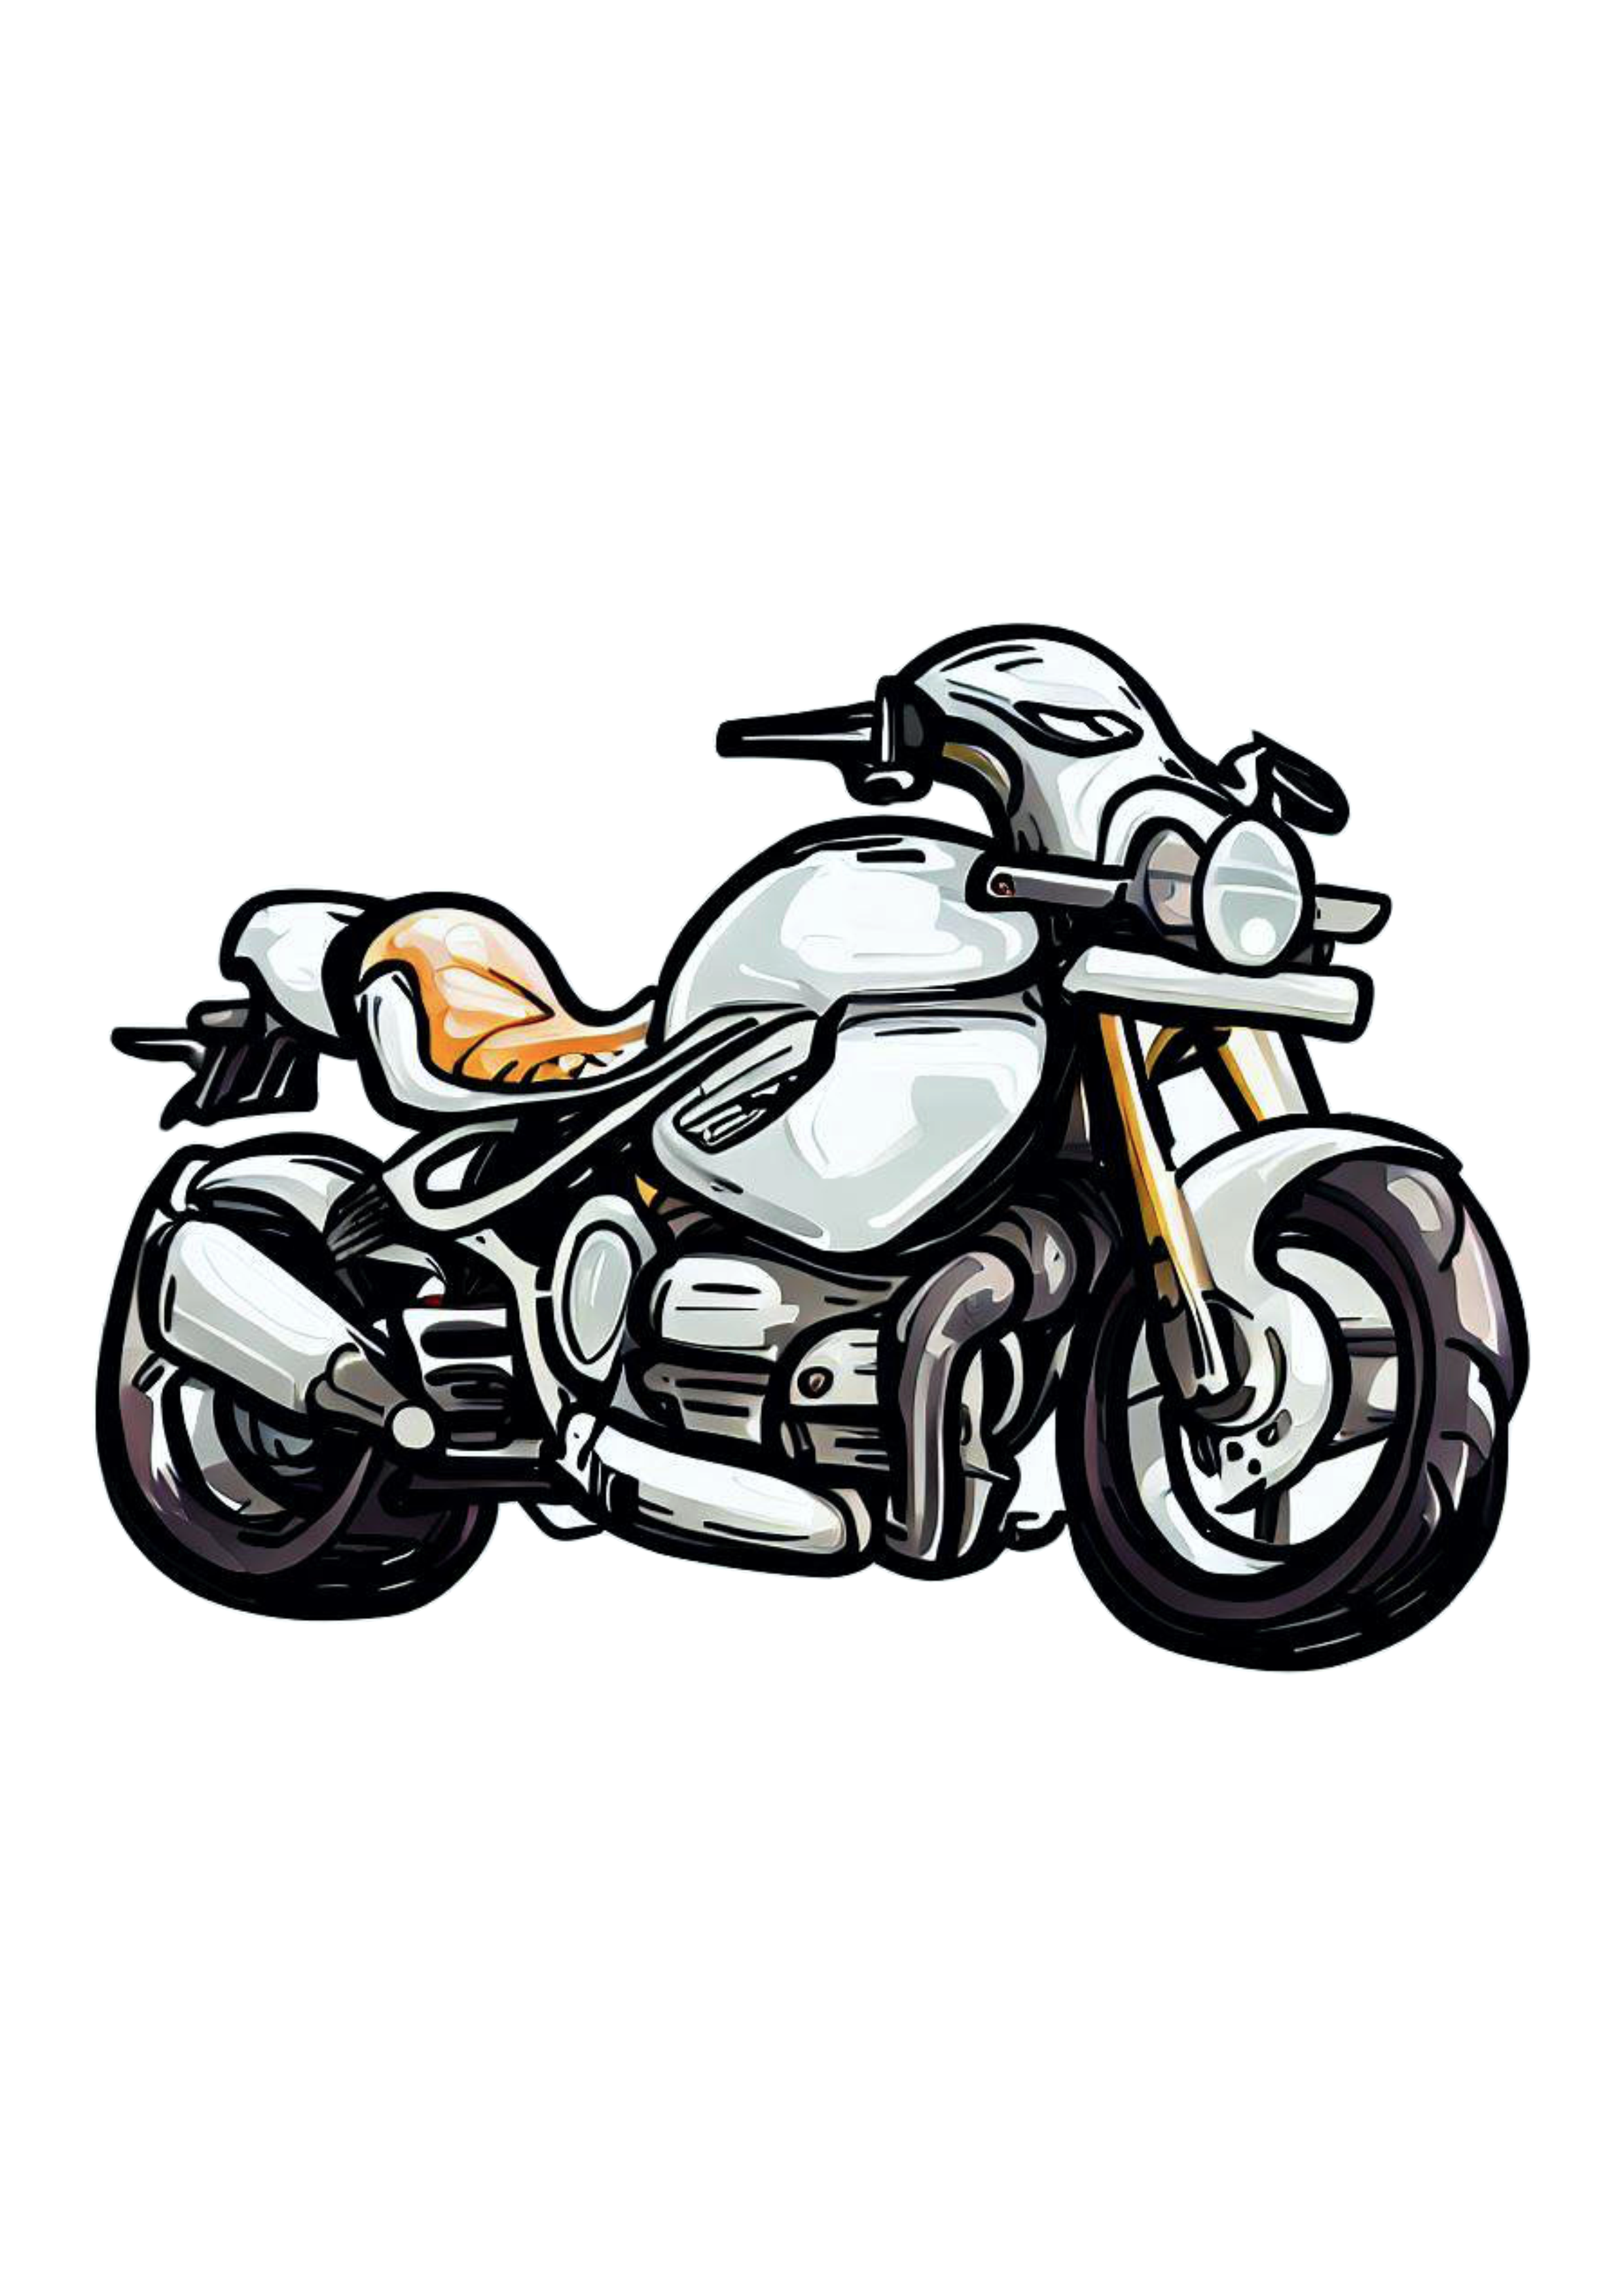 Moto esportiva desenho cartoon imagem conceitual veículo automotivo alta velocidade ilustração mecânico png